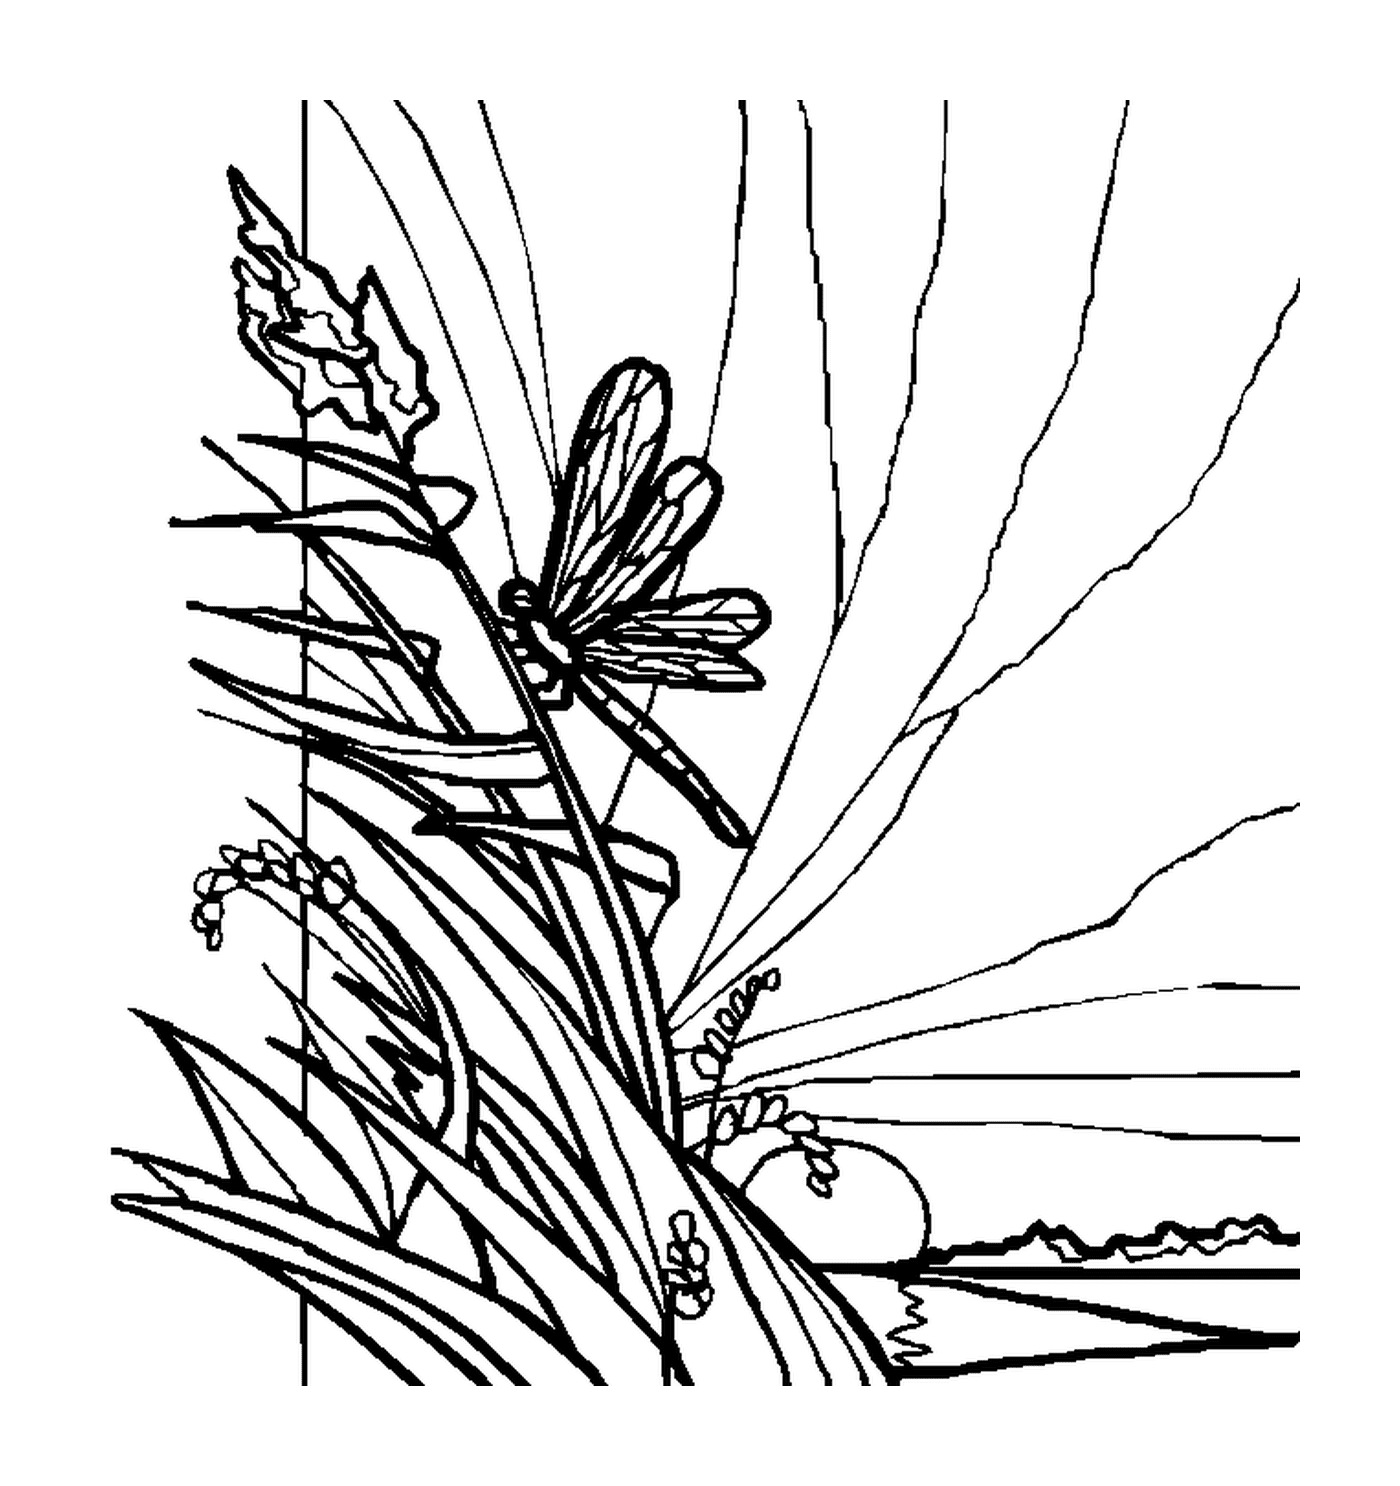   Une libellule posée sur de la végétation 